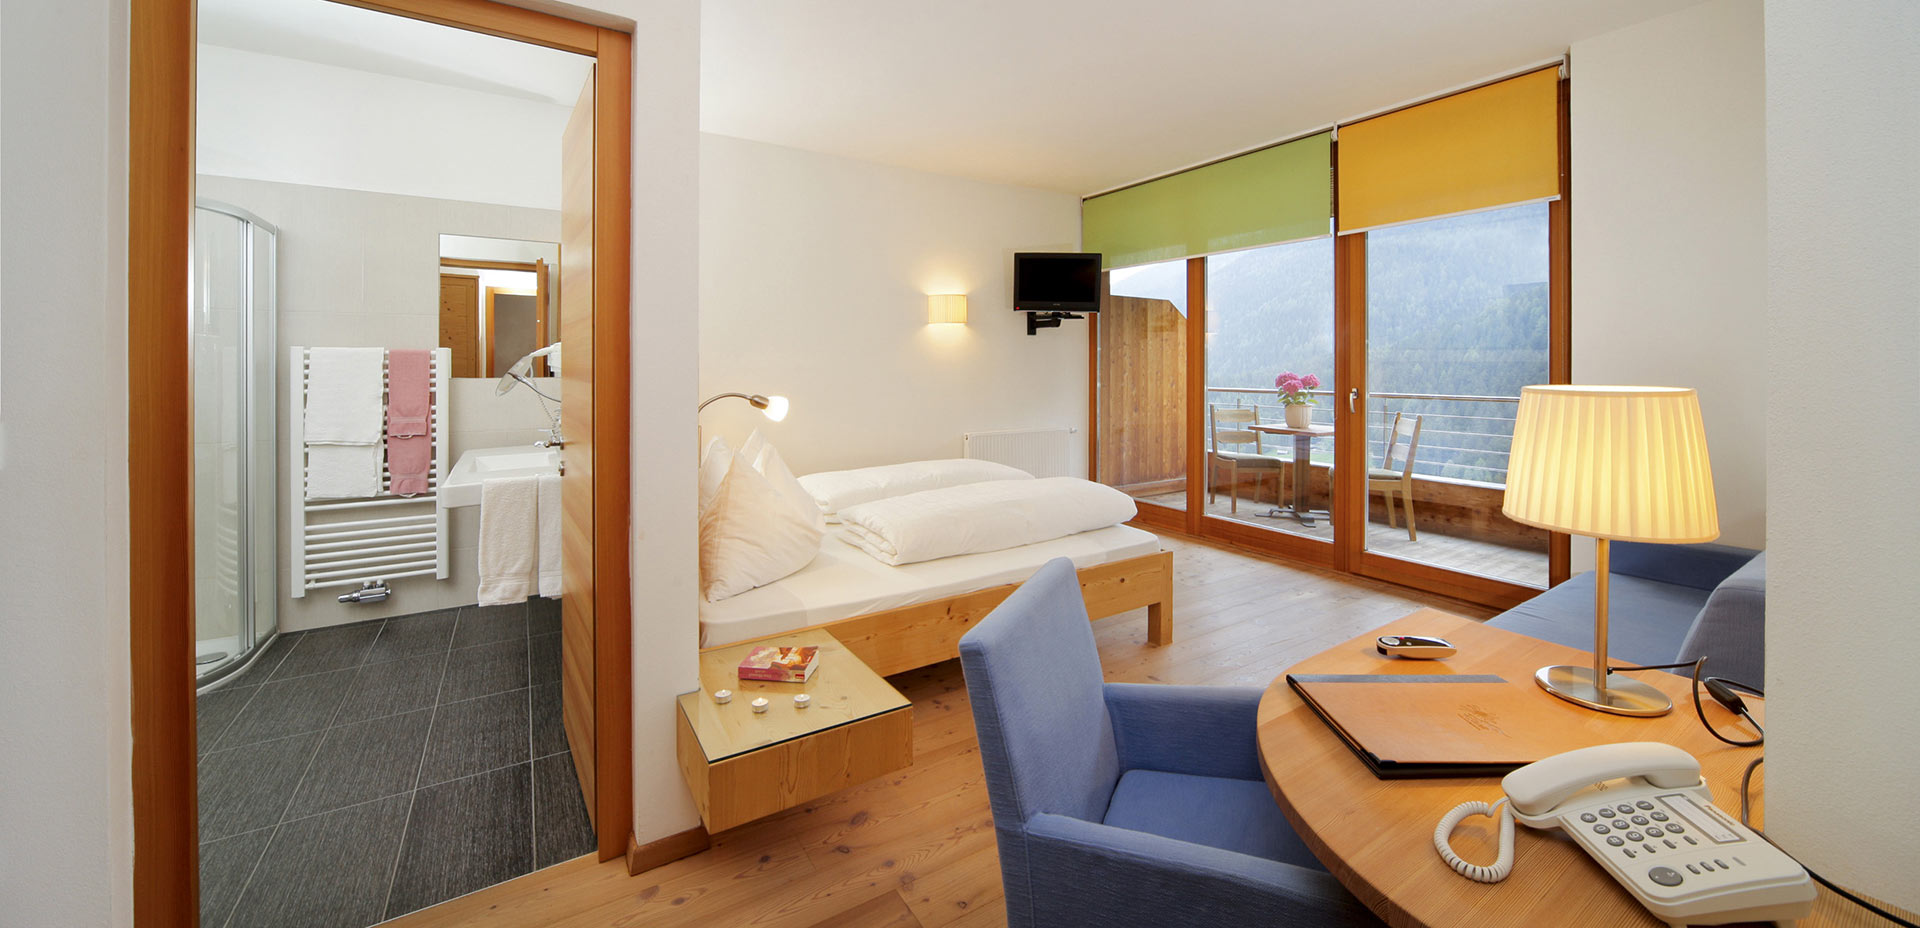 Family luxury room at Vital-Hotel Rainer